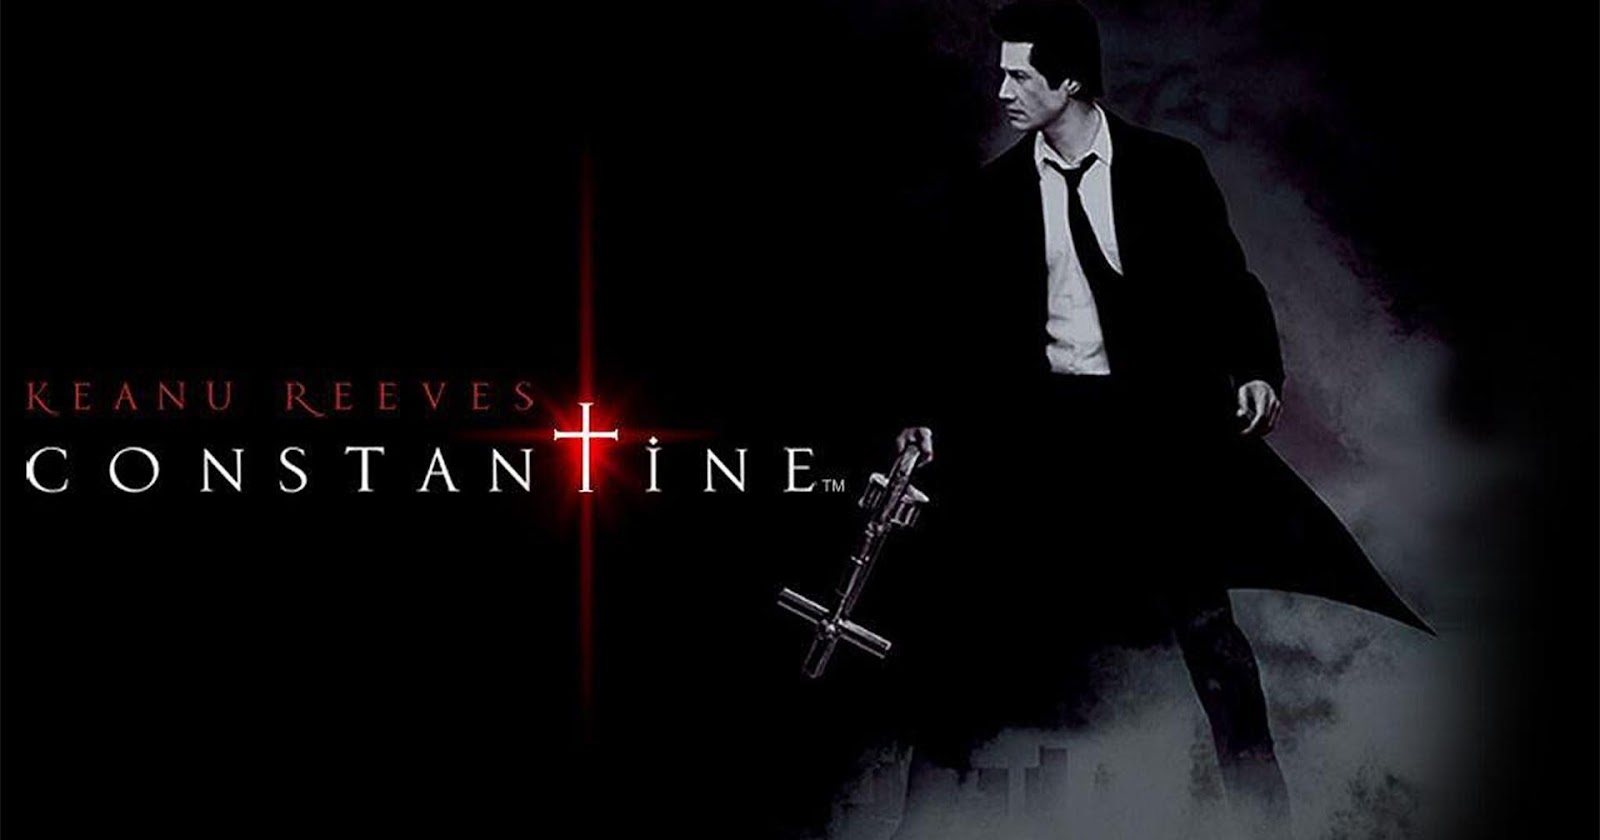 4 เหตุผลที่ส่งให้ Constantine กลายเป็นหนังคัลต์ที่แฟน ๆ  เฝ้ารอภาคต่อมานานถึง 17 ปี - #beartai